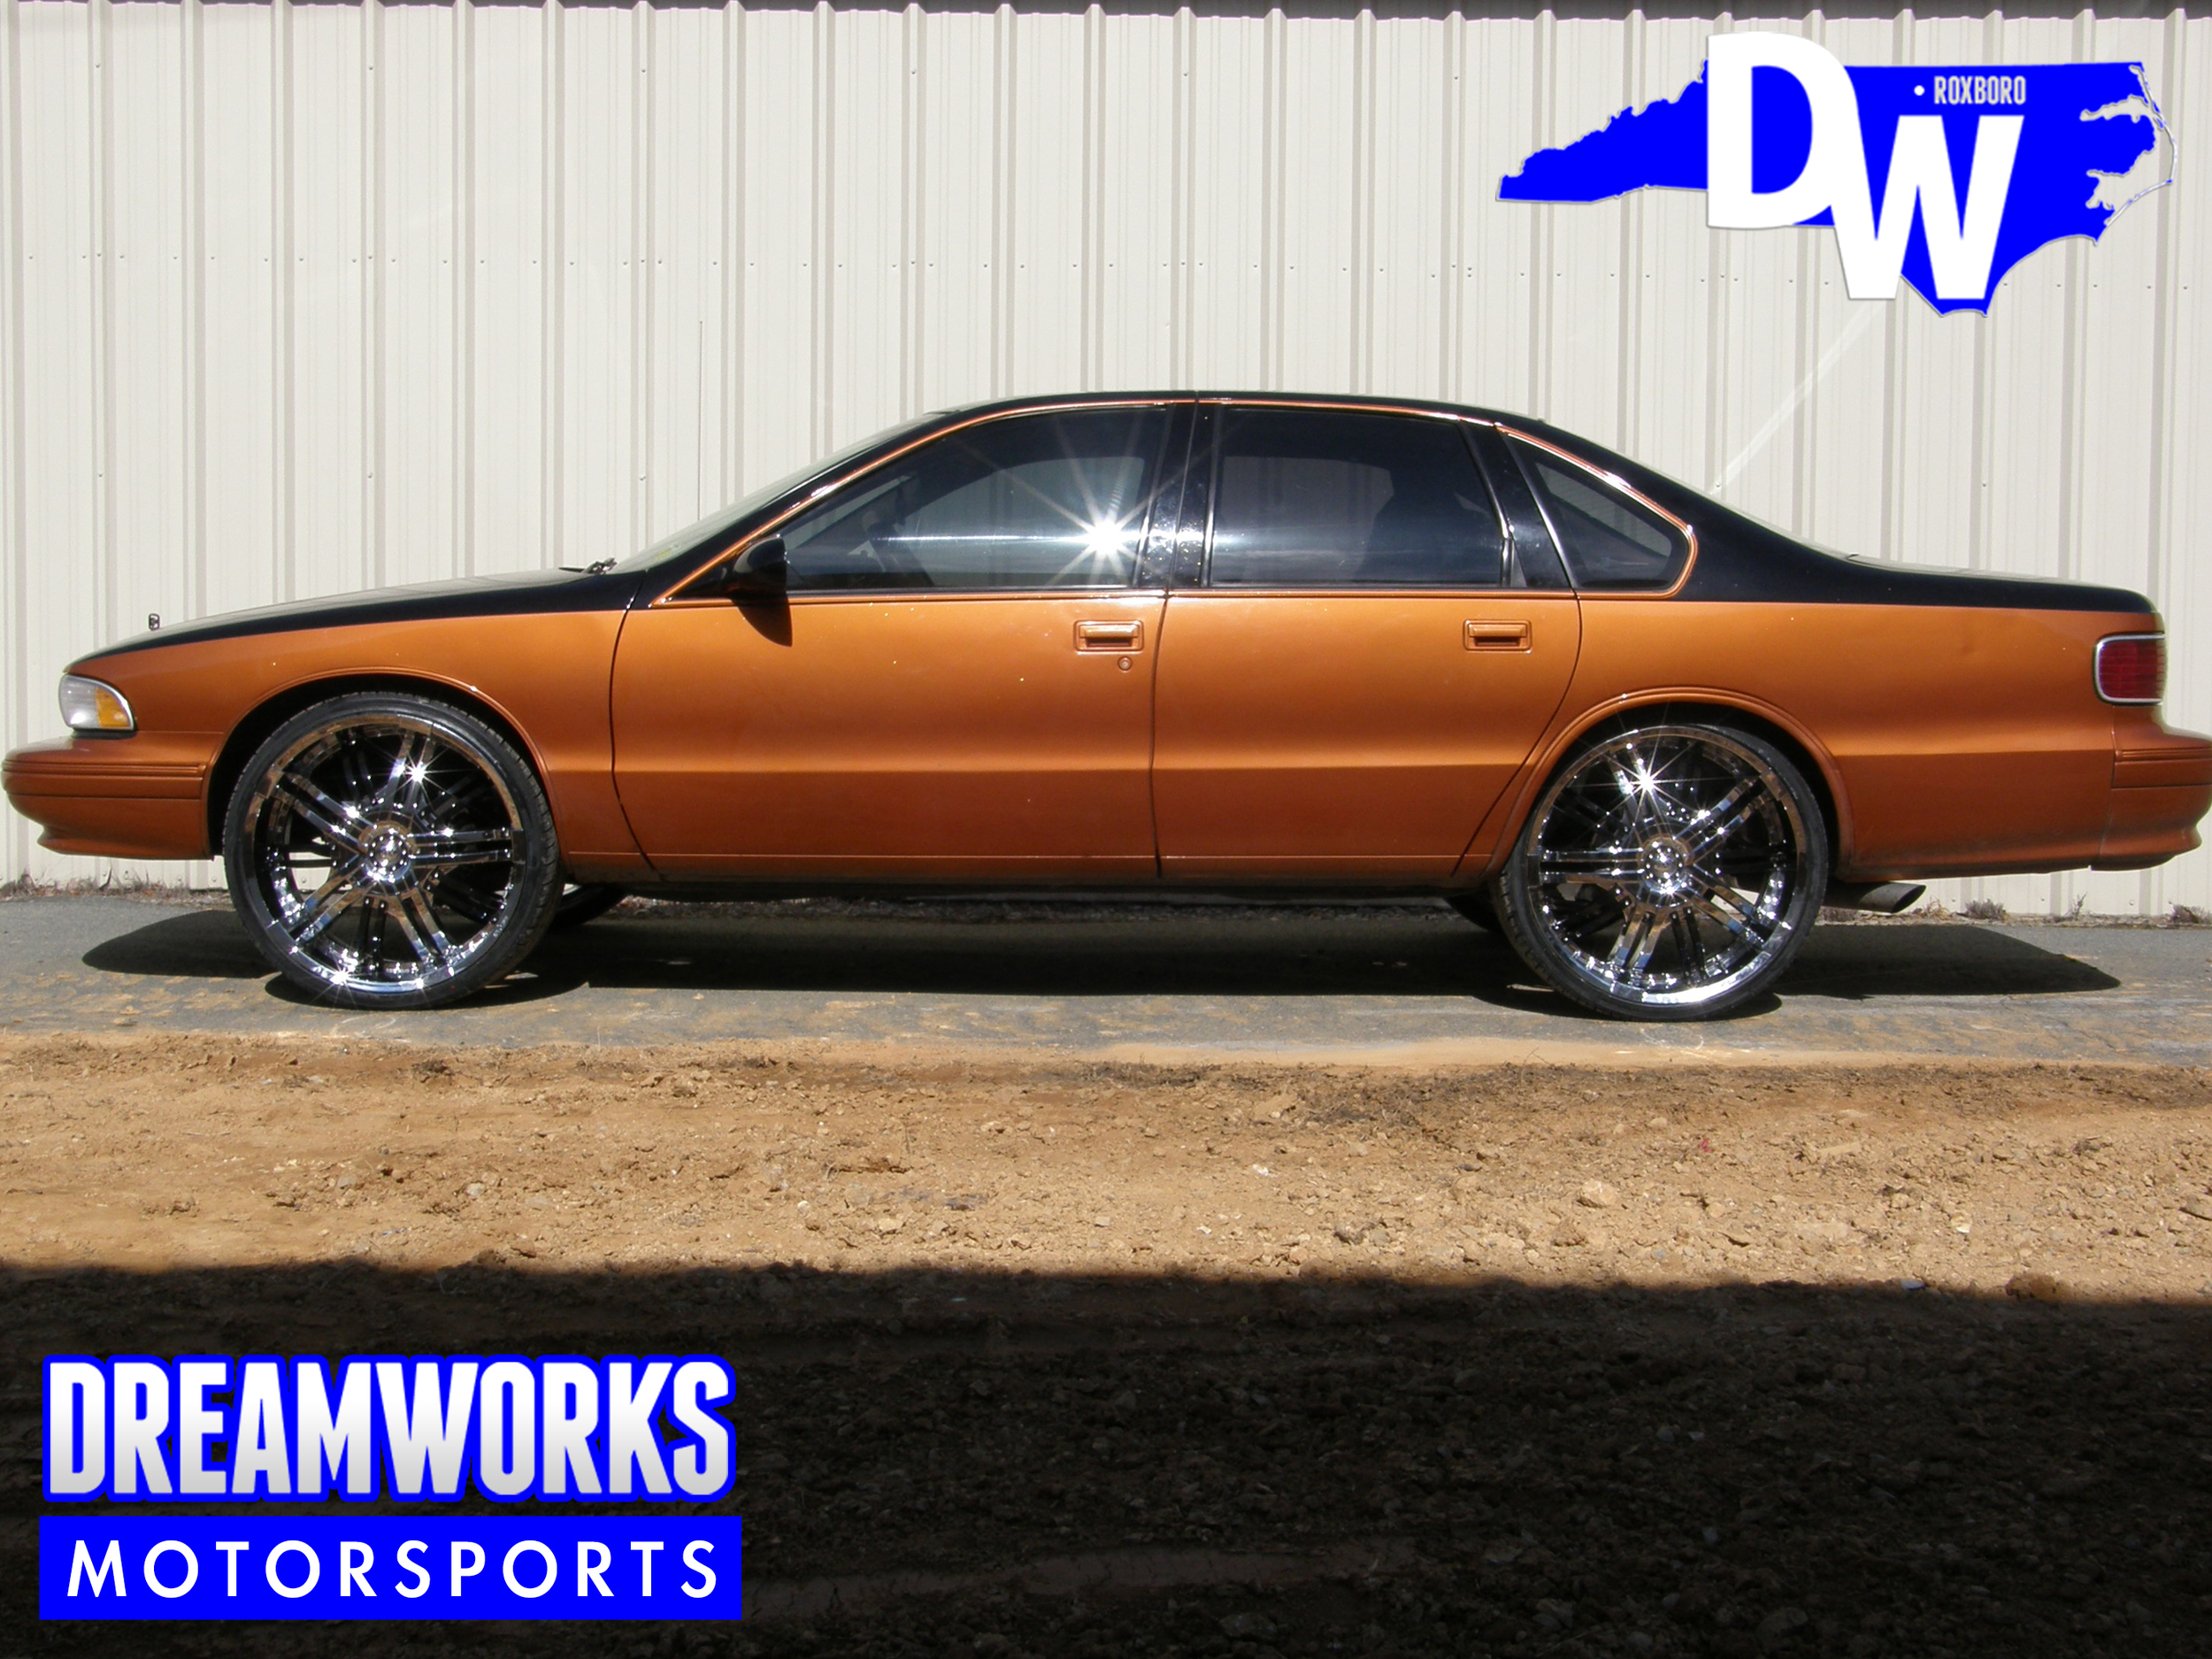 95-Chevrolet-Caprice-Starr-Dreamworks-Motorsports-1.jpg